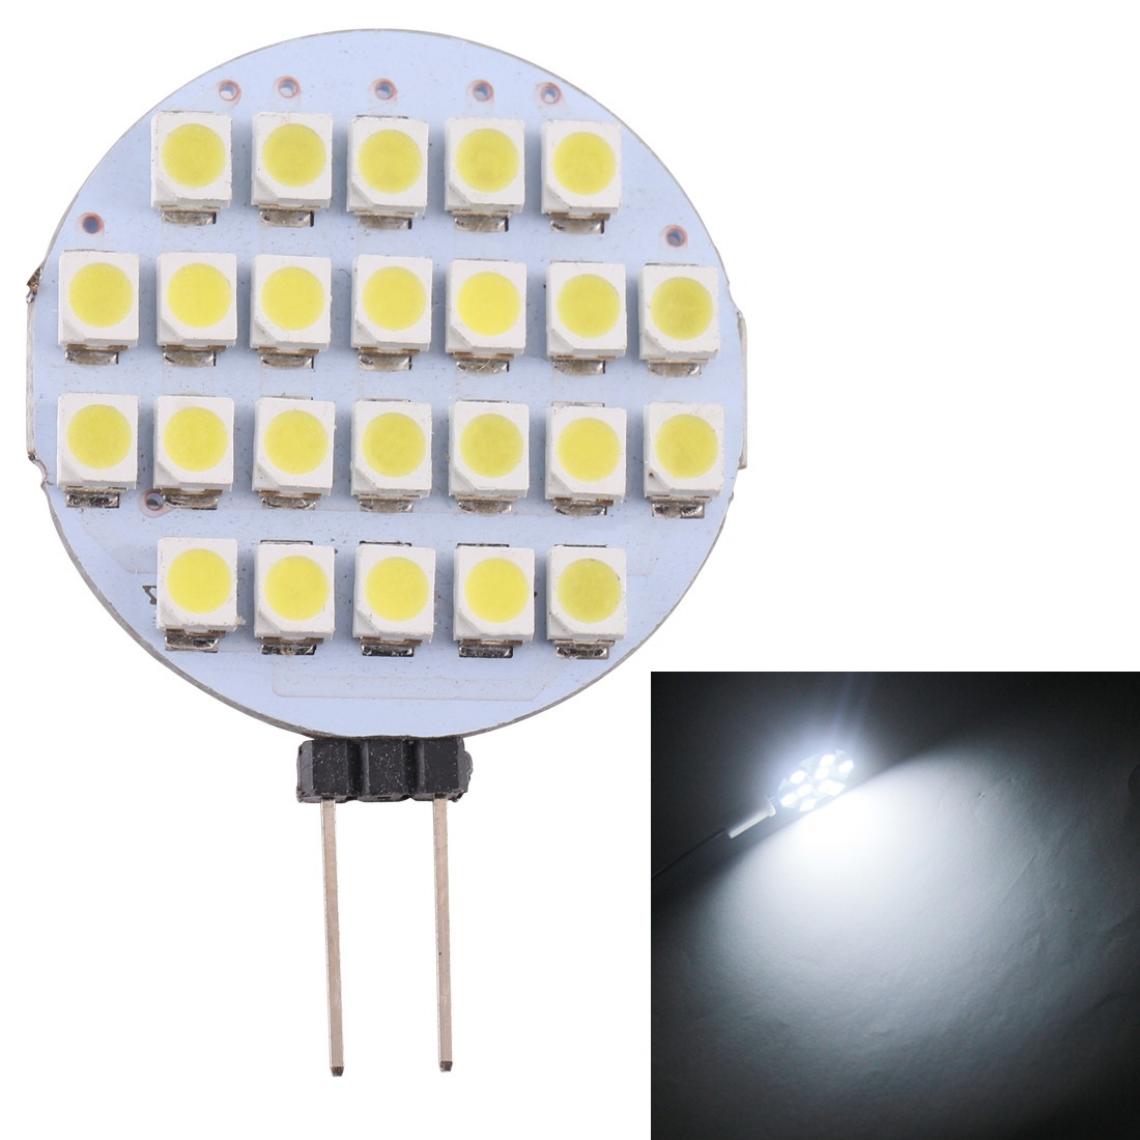 Wewoo - G4 24 LED SMD 3528 168LM 6000-6500K Ampoule de lampe de base à broche à économie d'énergie à intensité variableDC 12V lumière blanche - Ampoules LED